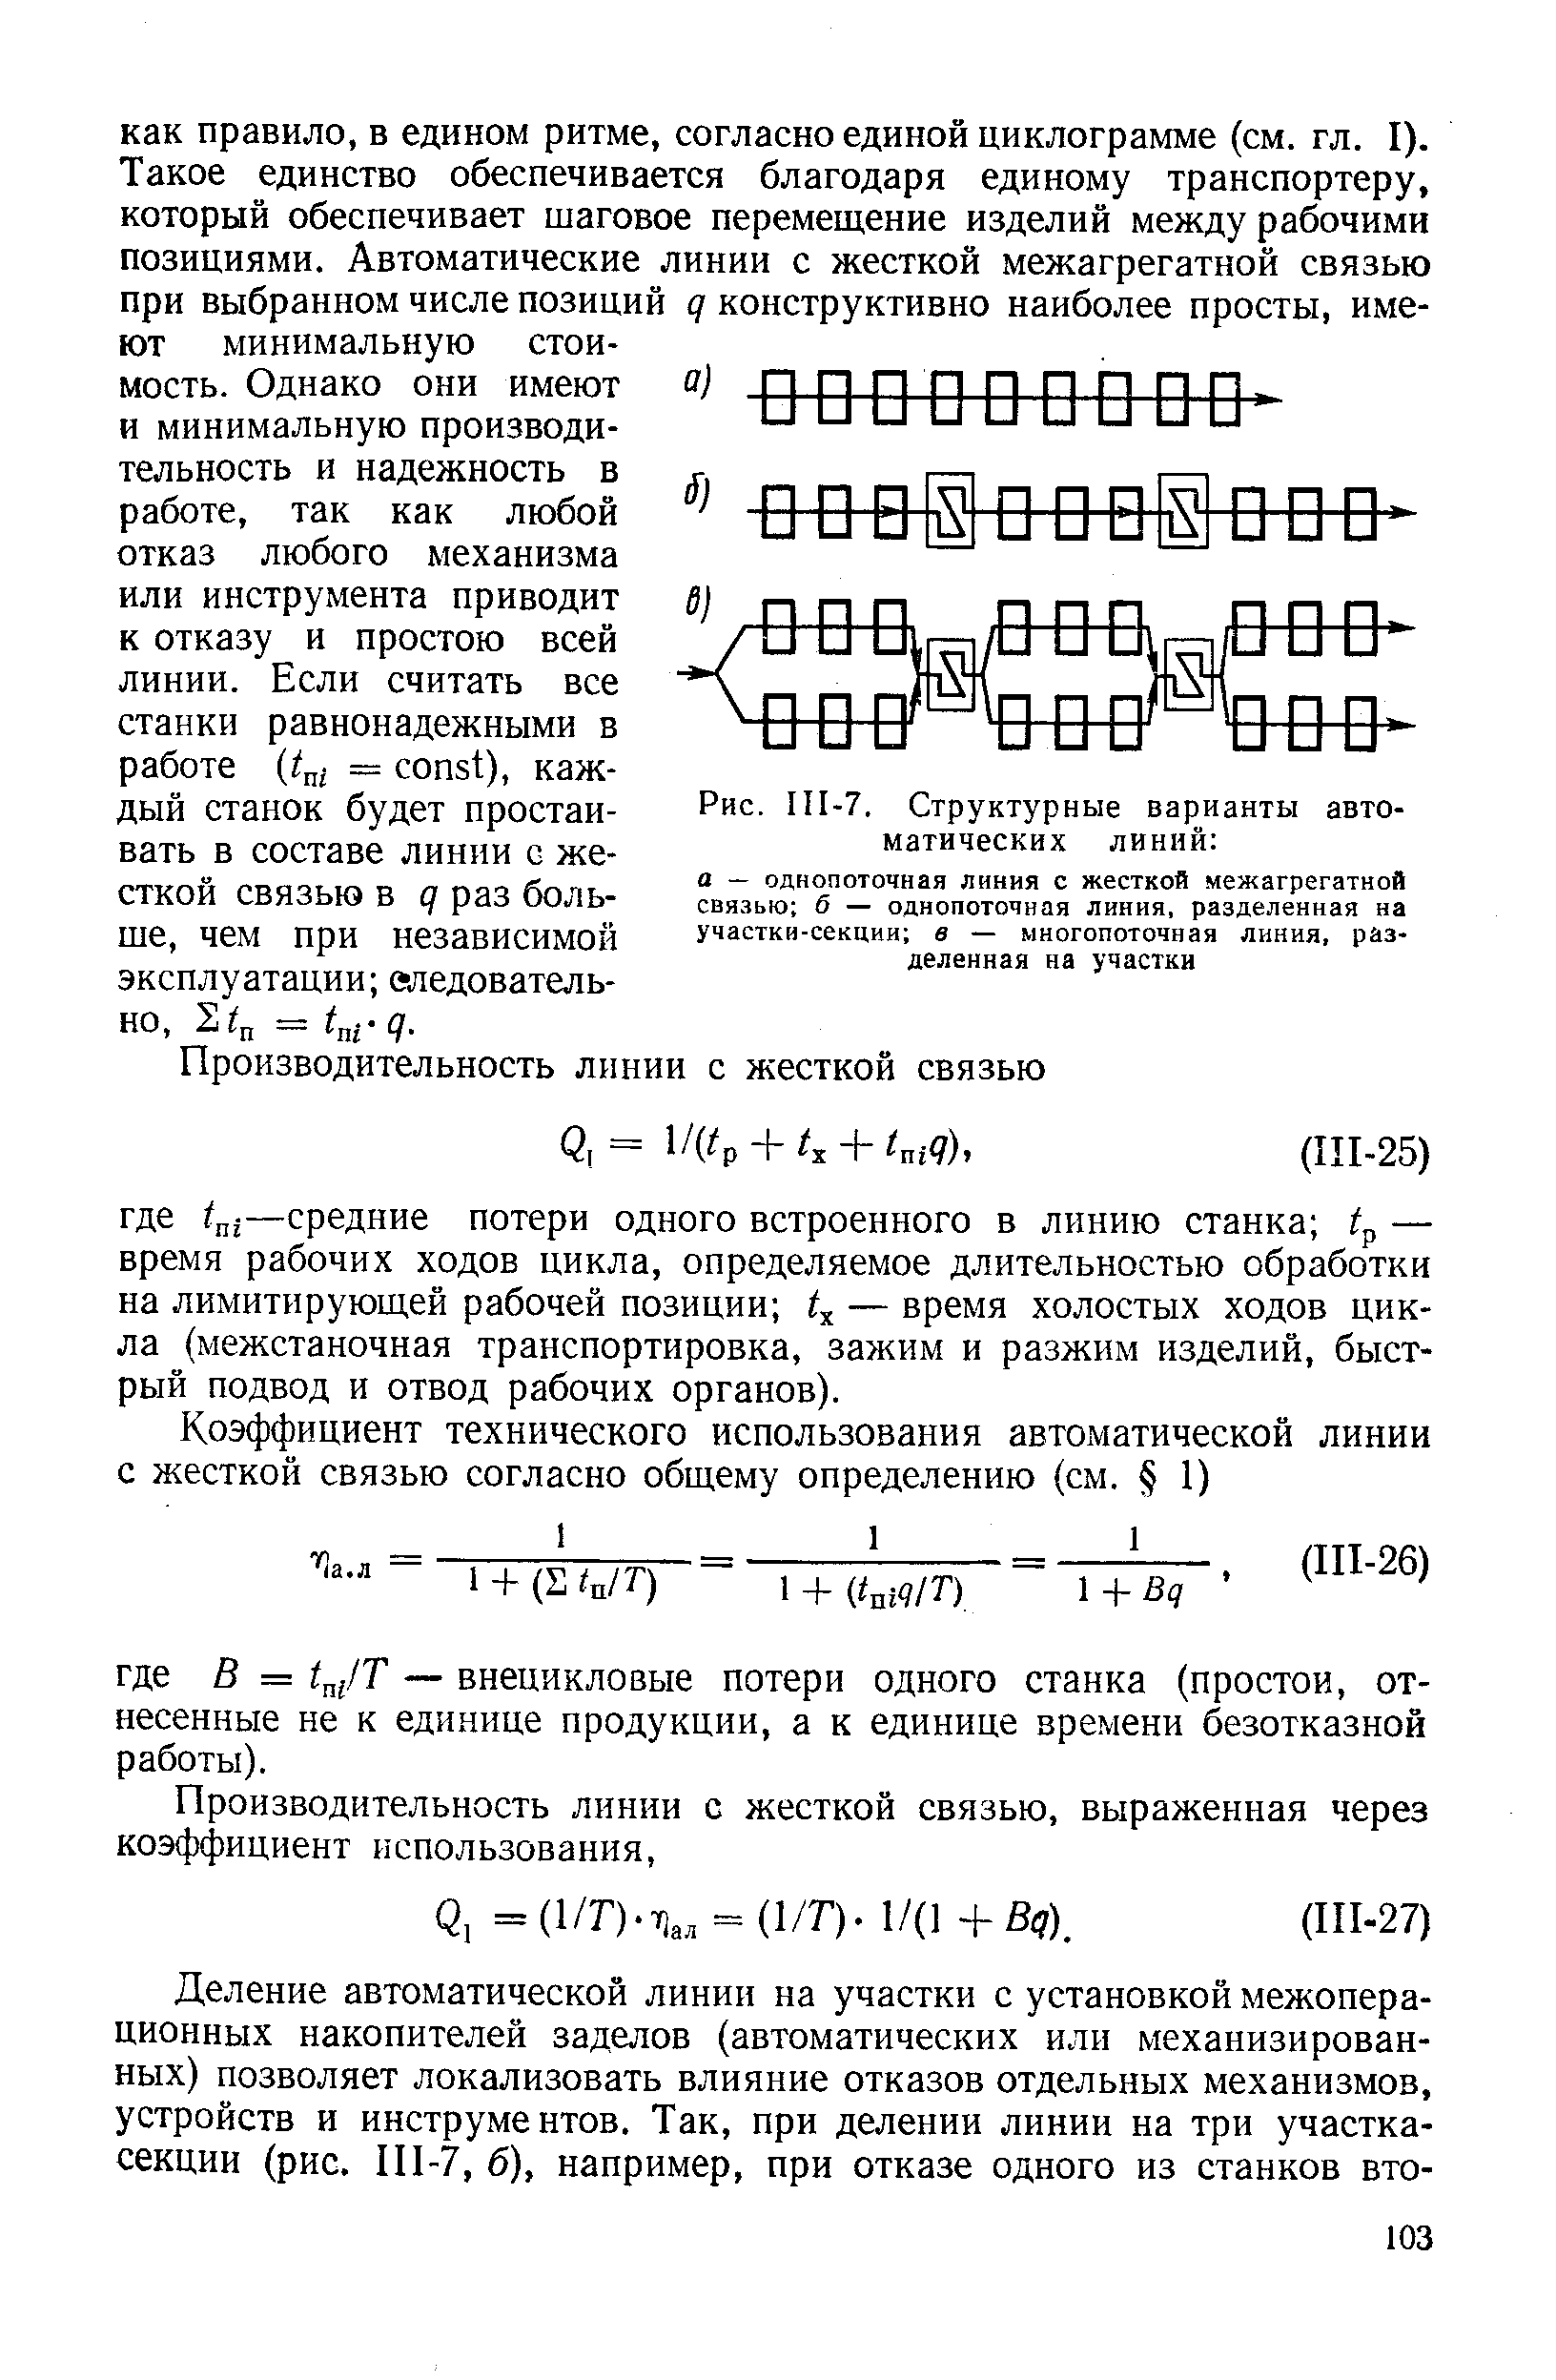 Рис. III-7, Структурные варианты автоматических линий 
